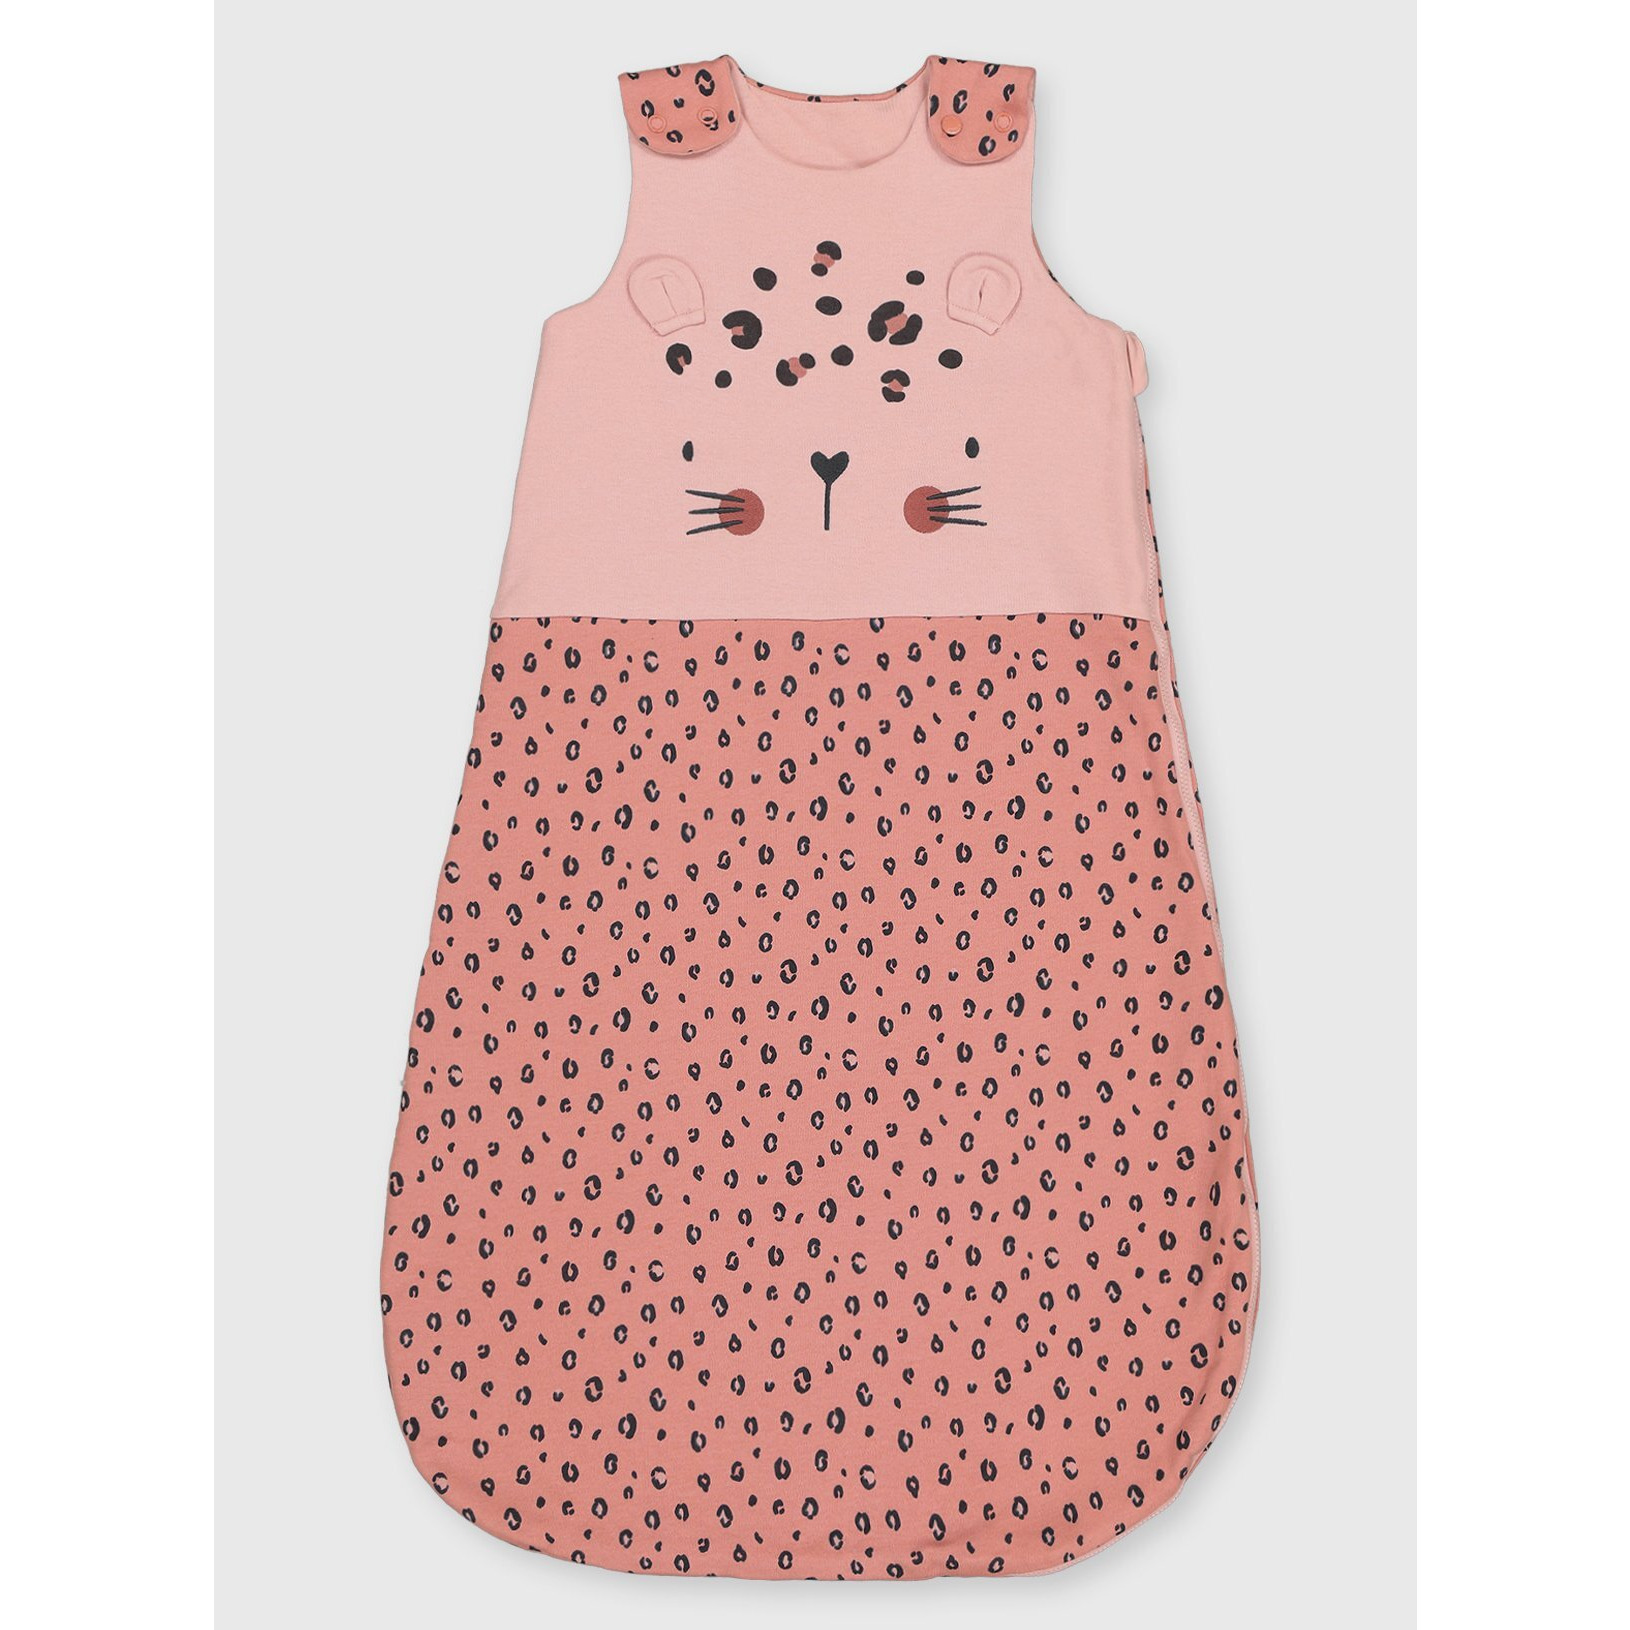 Pink Leopard Sleeping Bag 1.5 Tog - 0-6 Months - image 1